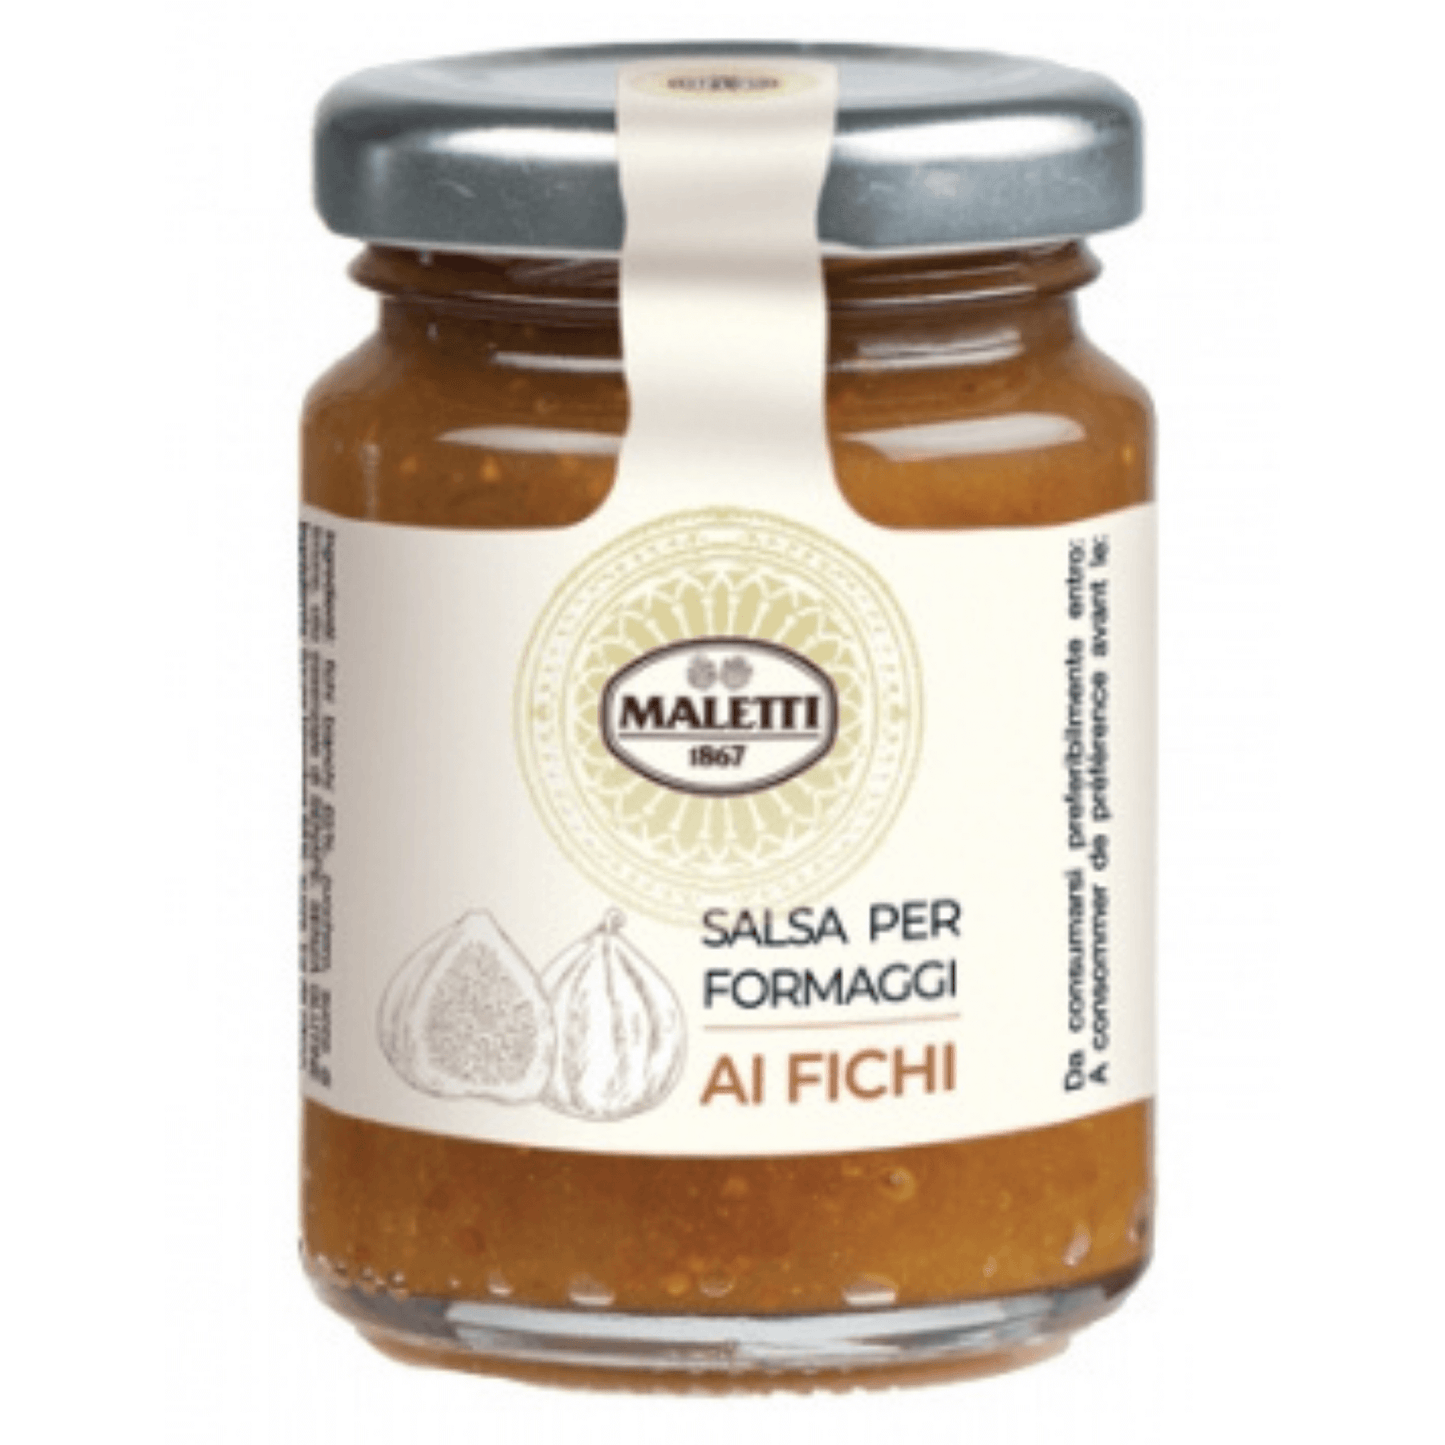 Salsa per formaggi ai fichi Maletti 110 g